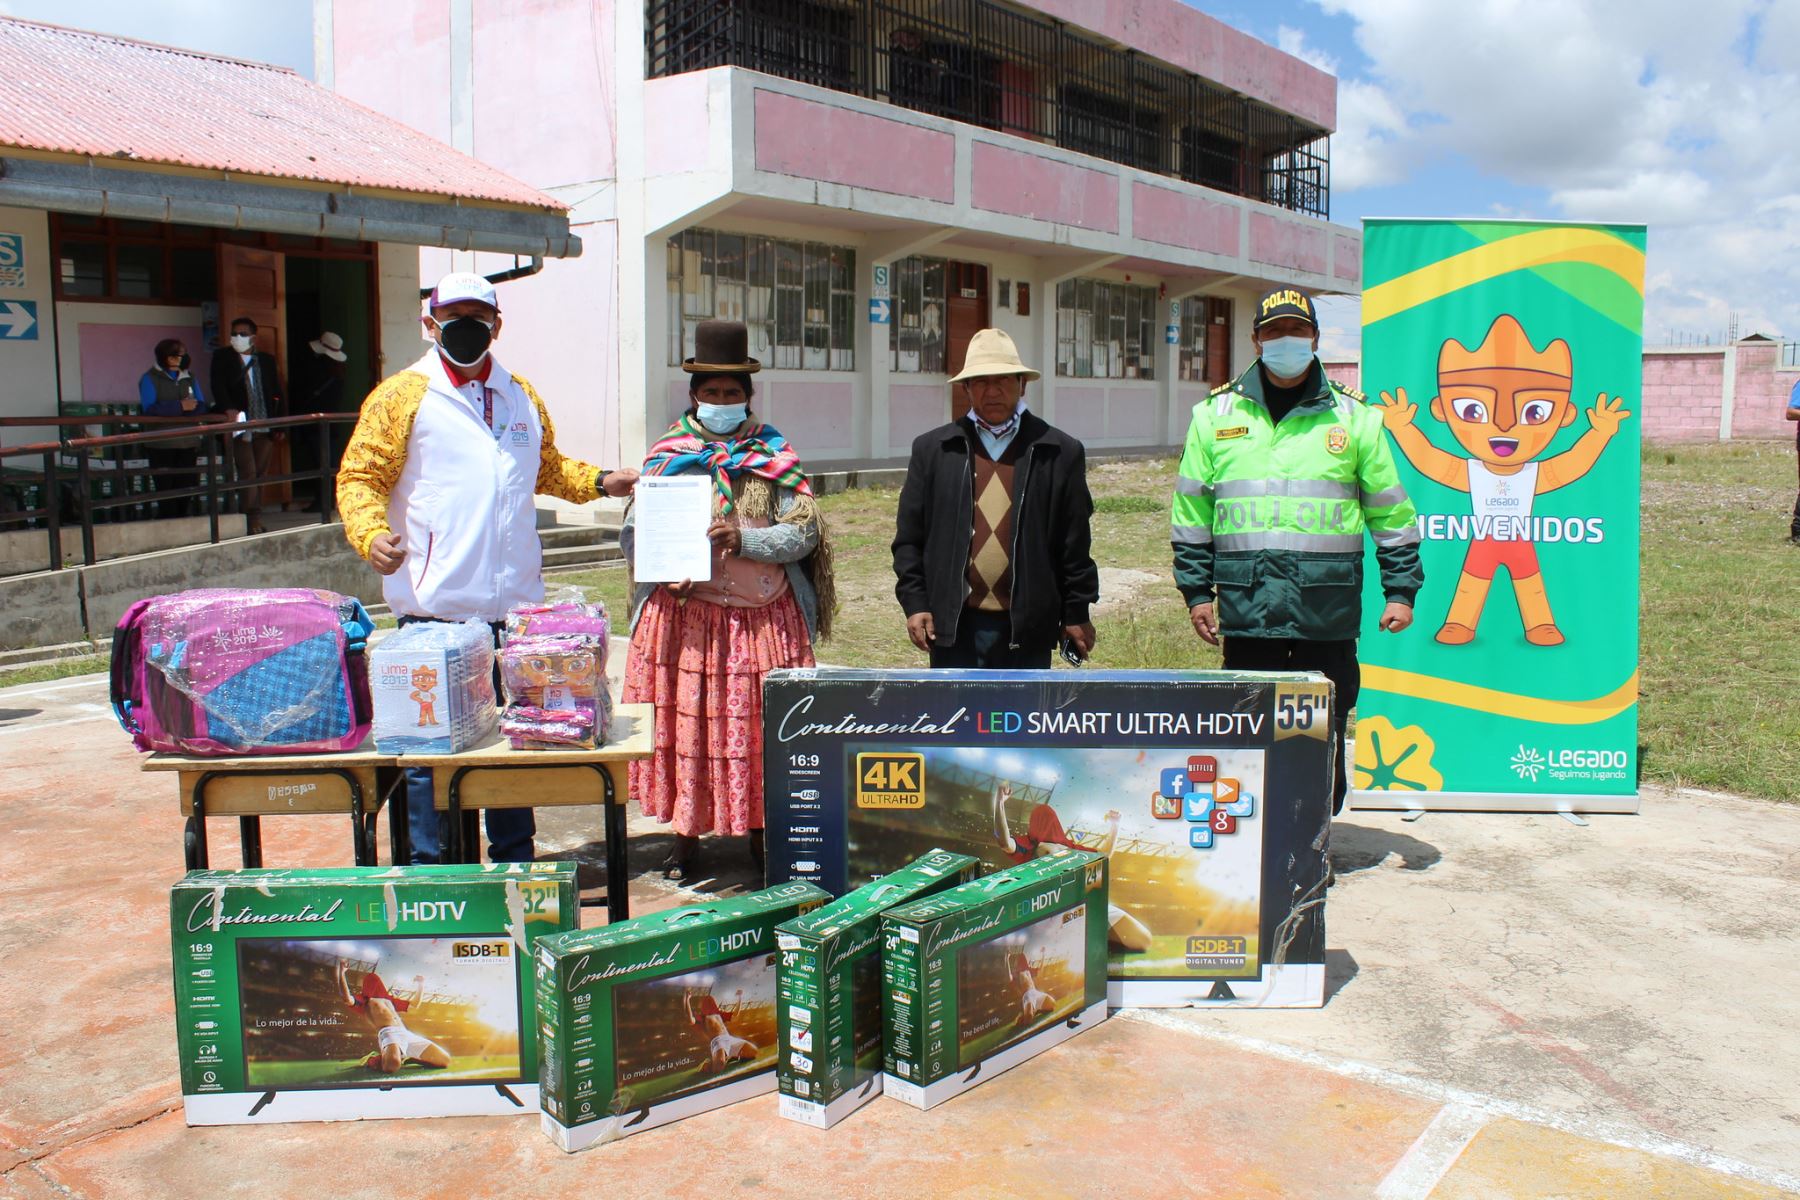 El material donado ha sido distribuido a los centros educativos de nivel primaria y secundaria de los distritos de pobreza extrema de Kelluyo, Huacullani, Pisacoma, Juli, Desaguadero e Ilave.